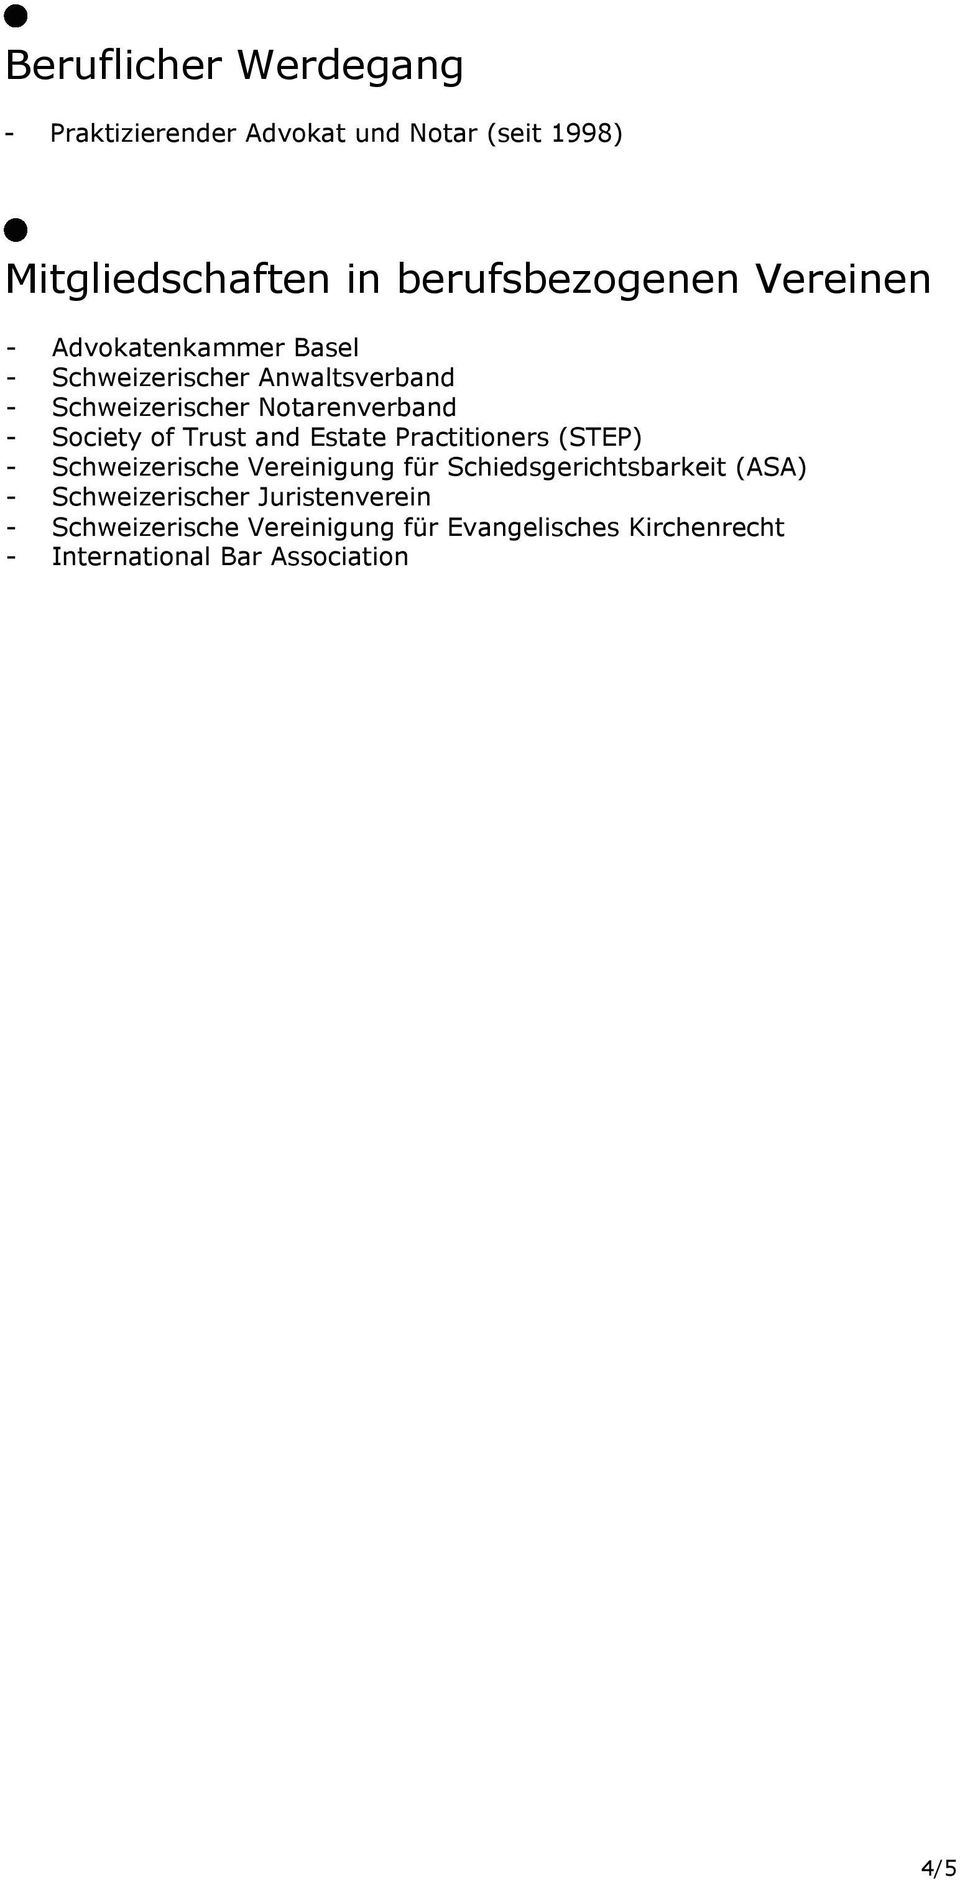 Trust and Estate Practitioners (STEP) - Schweizerische Vereinigung für Schiedsgerichtsbarkeit (ASA) -